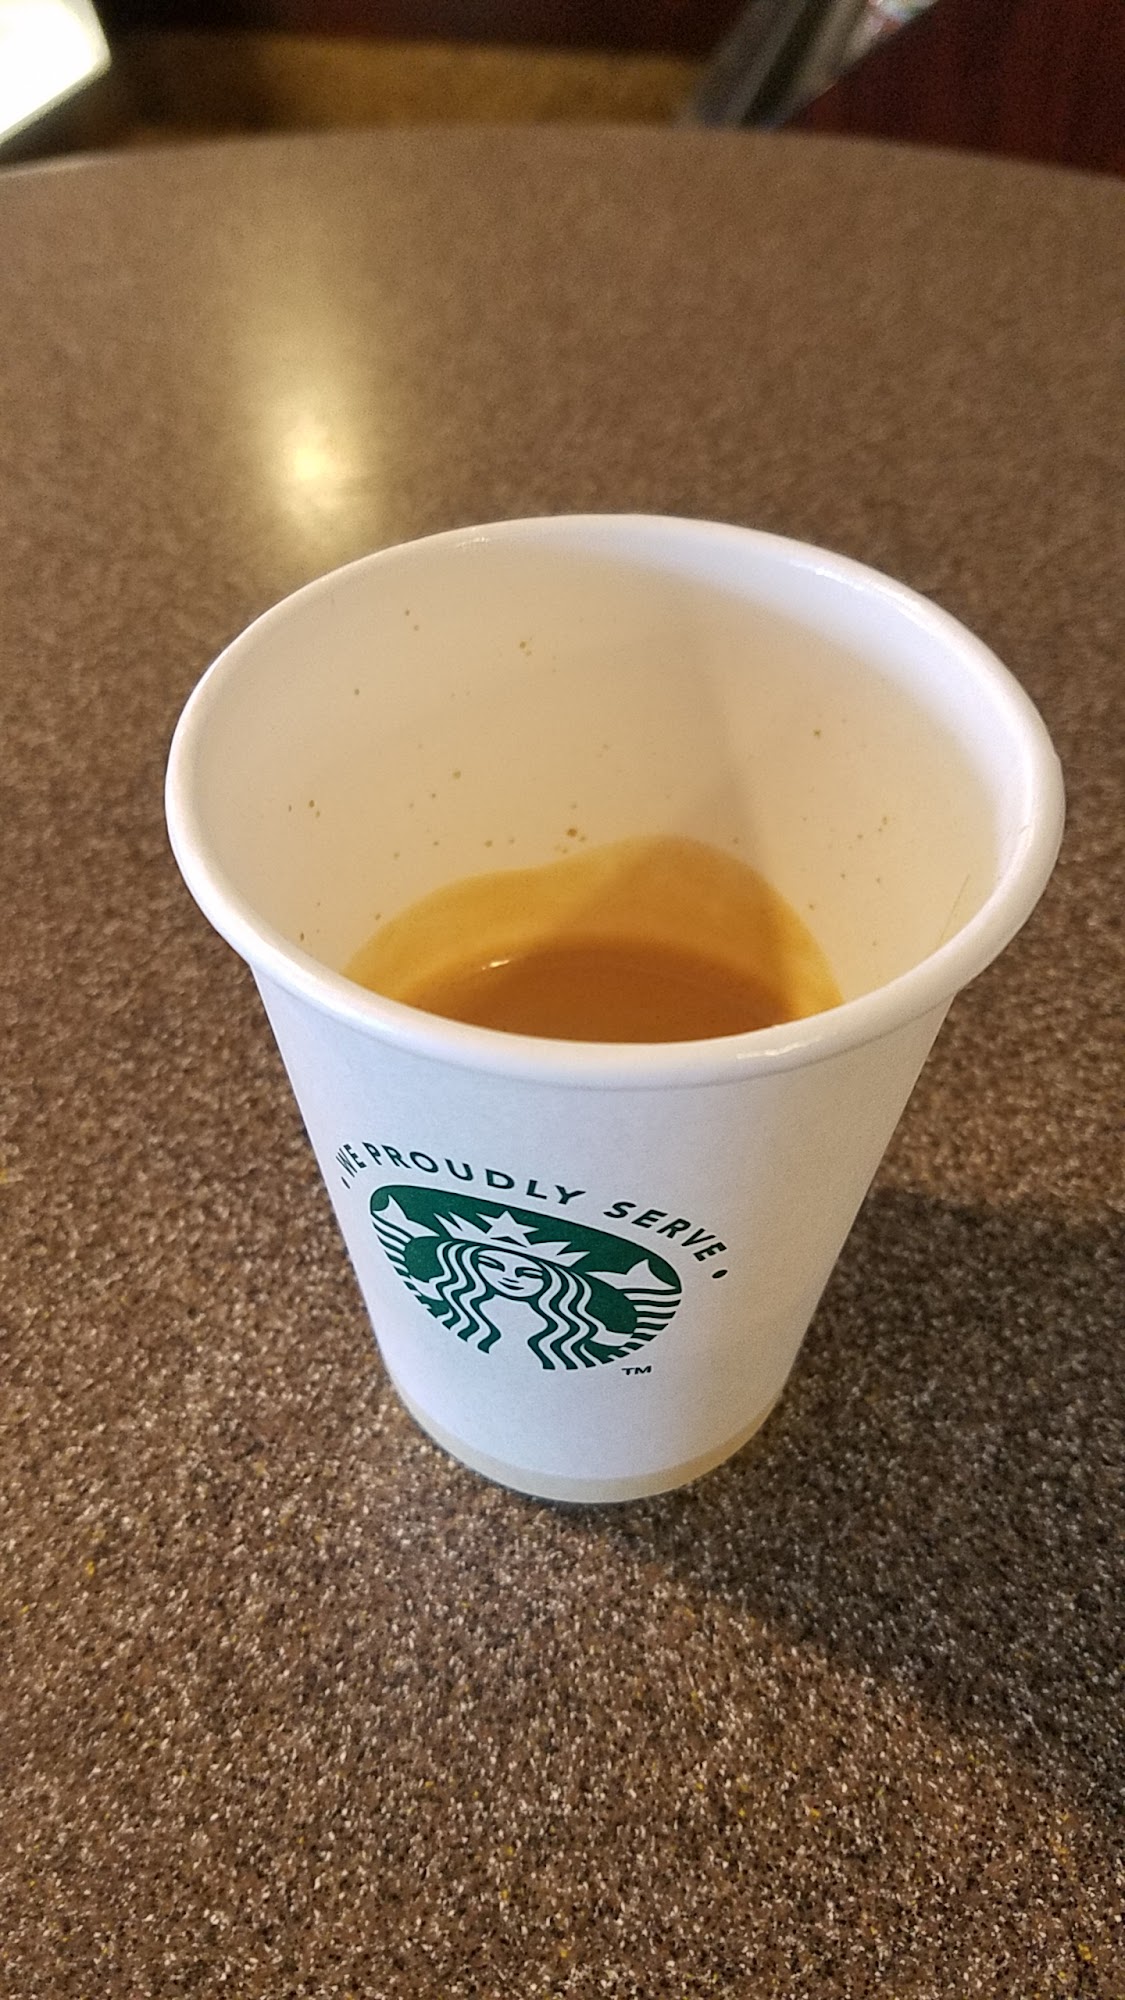 Starbucks Kiosk at Holy Name Hospital